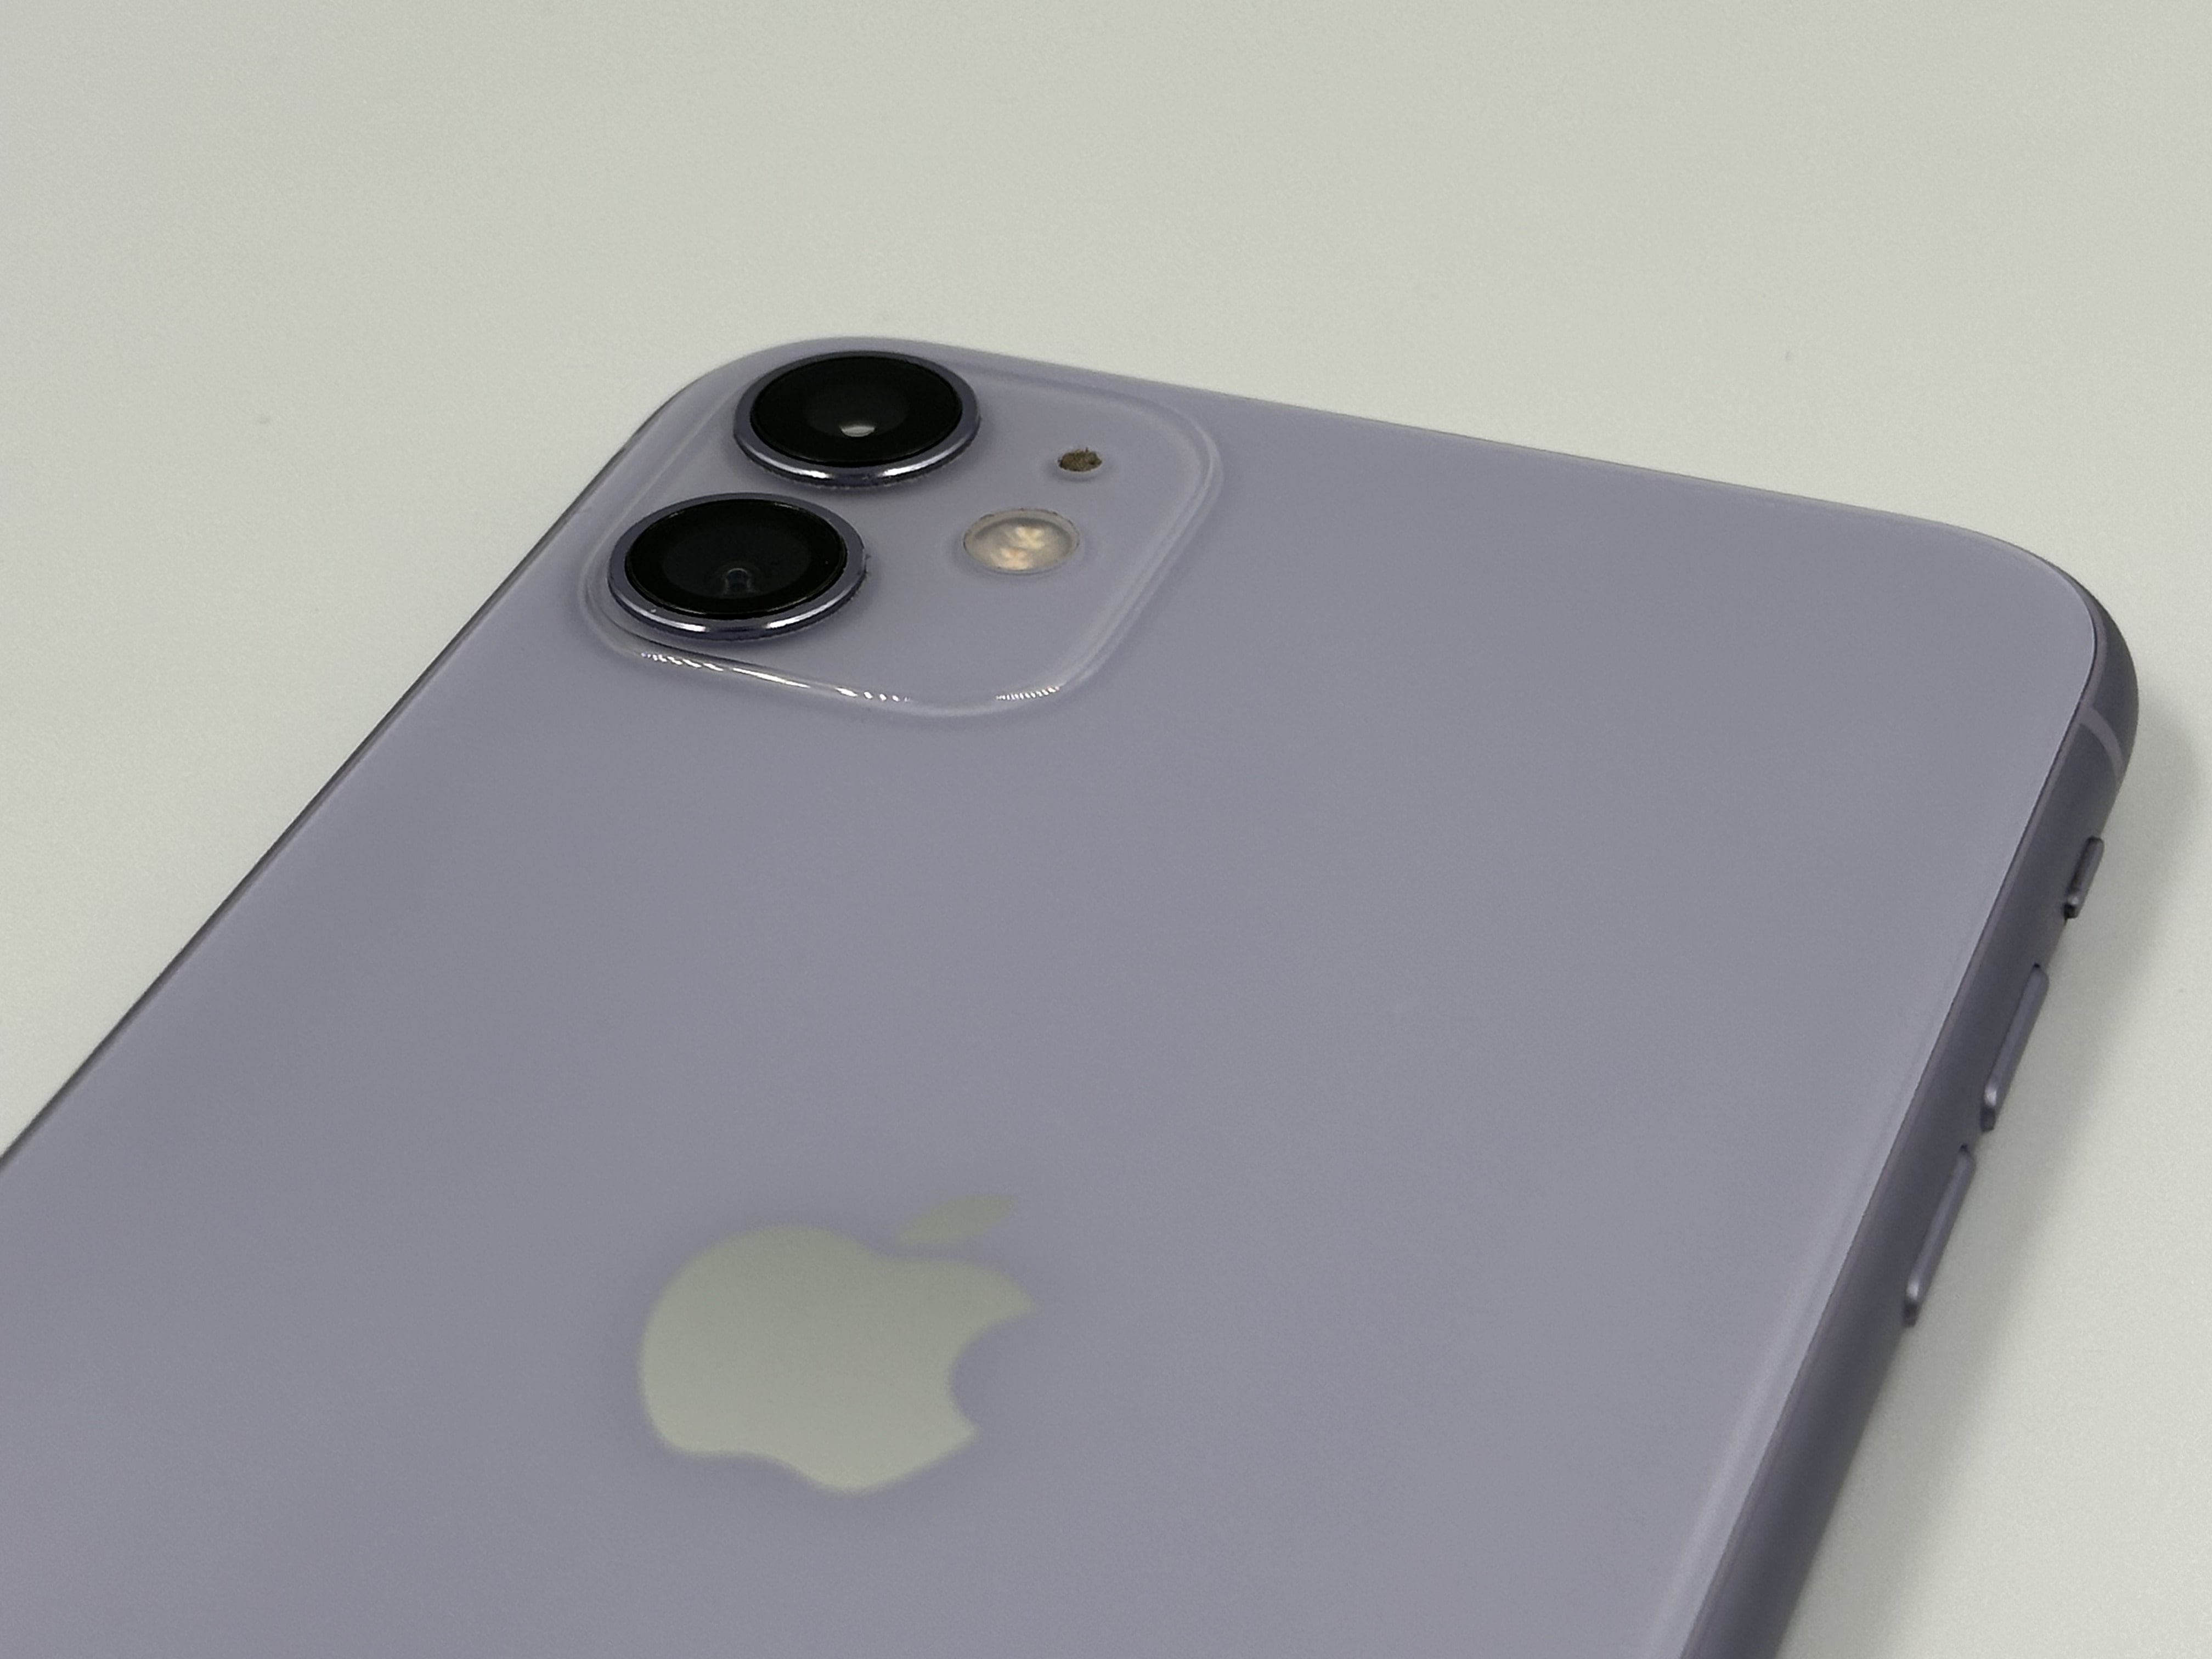 iPhone 11, 128Gb, Фиолетовый